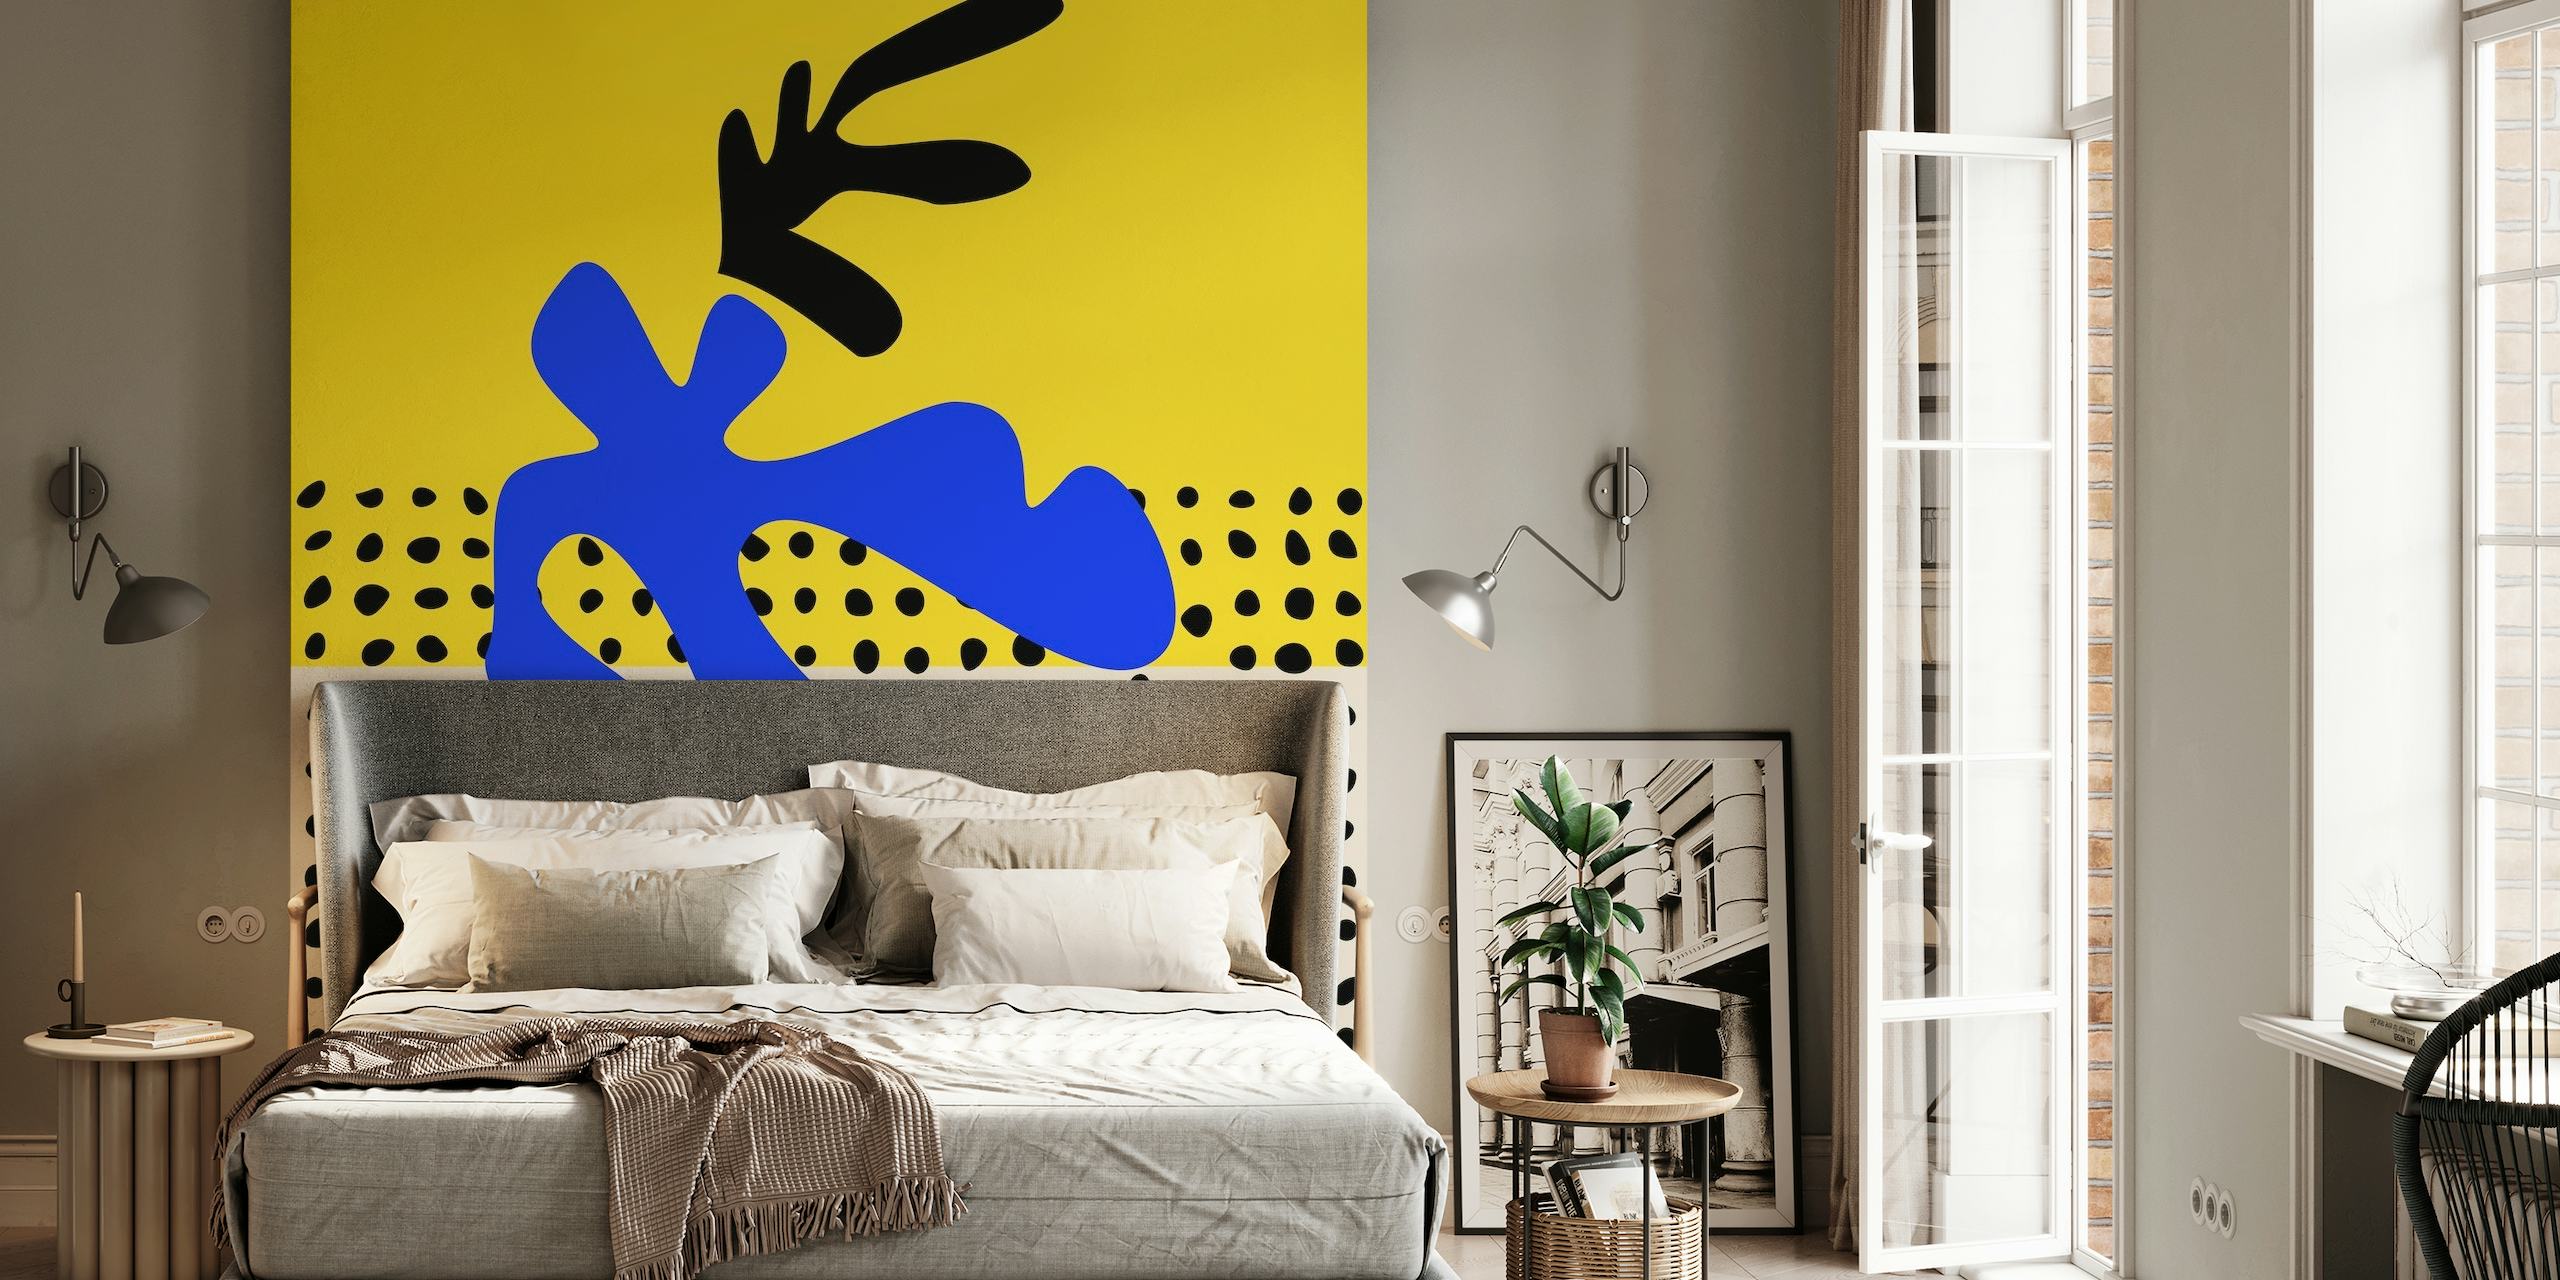 Vibrant Matisse Inspired Art behang